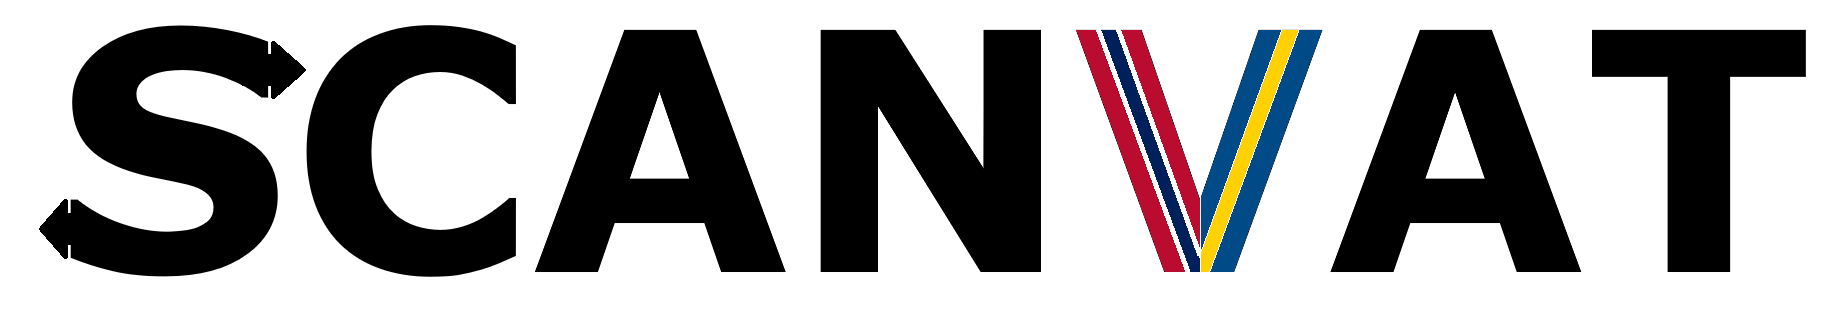 Scanvat logo